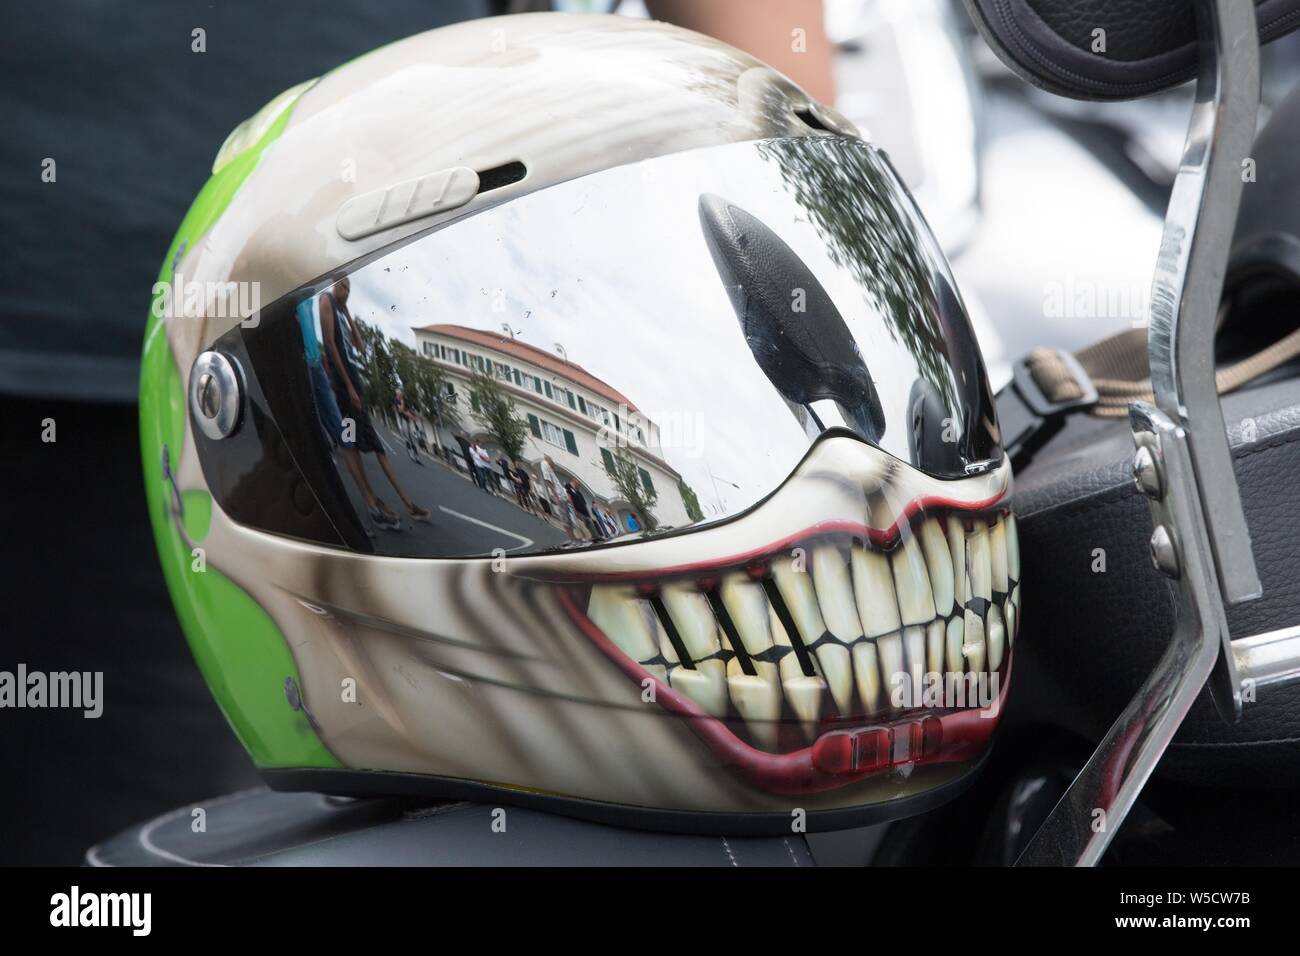 Dresde, Allemagne. 28 juillet, 2019. Un casque est allongé sur le siège  d'une moto Harley Davidson avant le début d'une parade des motards à l' occasion de la Harley Days 2019 à Dresde.